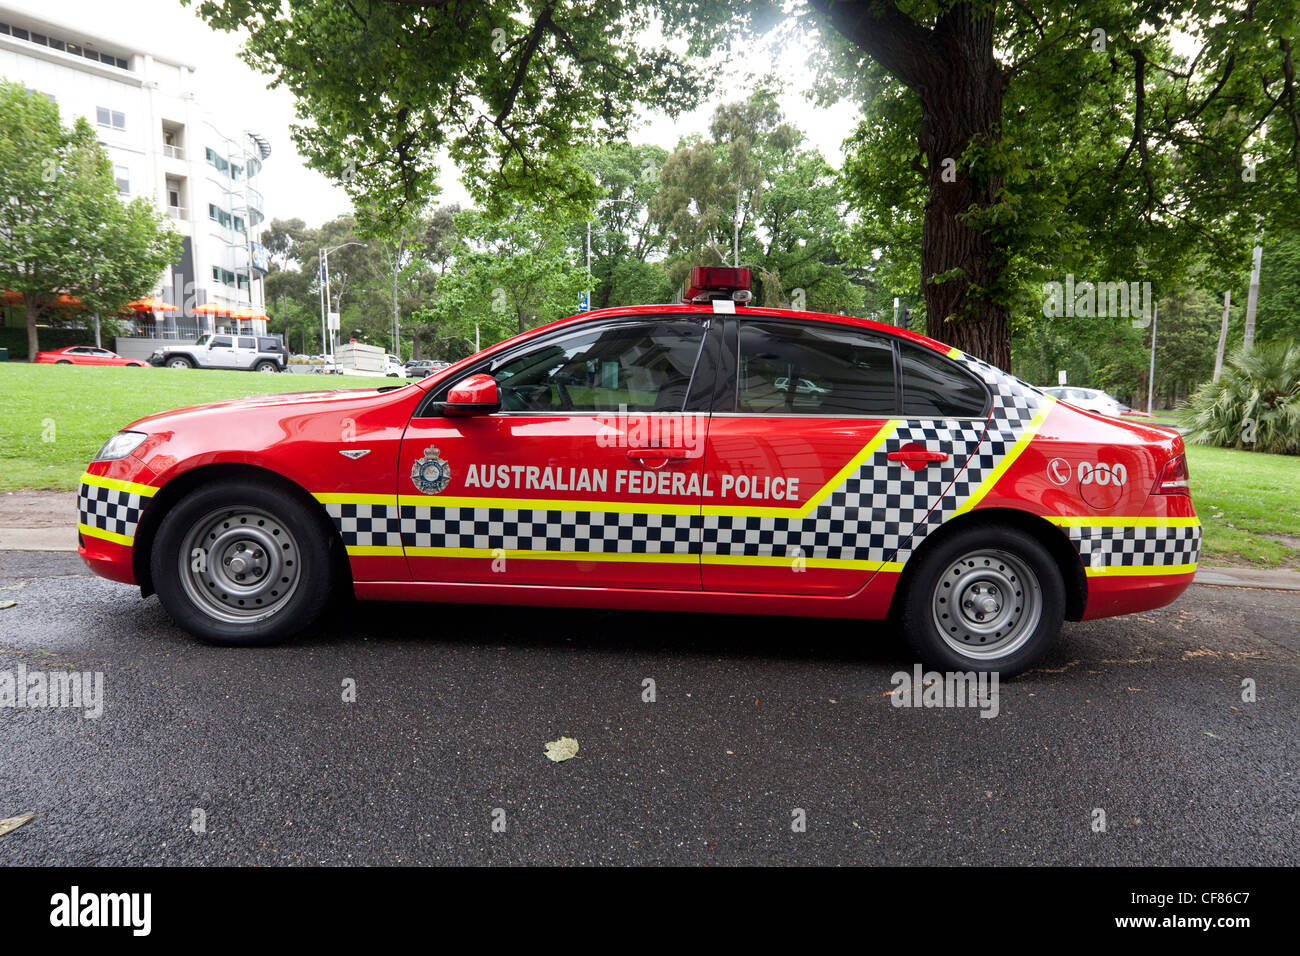 Australian Federal Poiice car, Melbourne, Australia Stock Photo